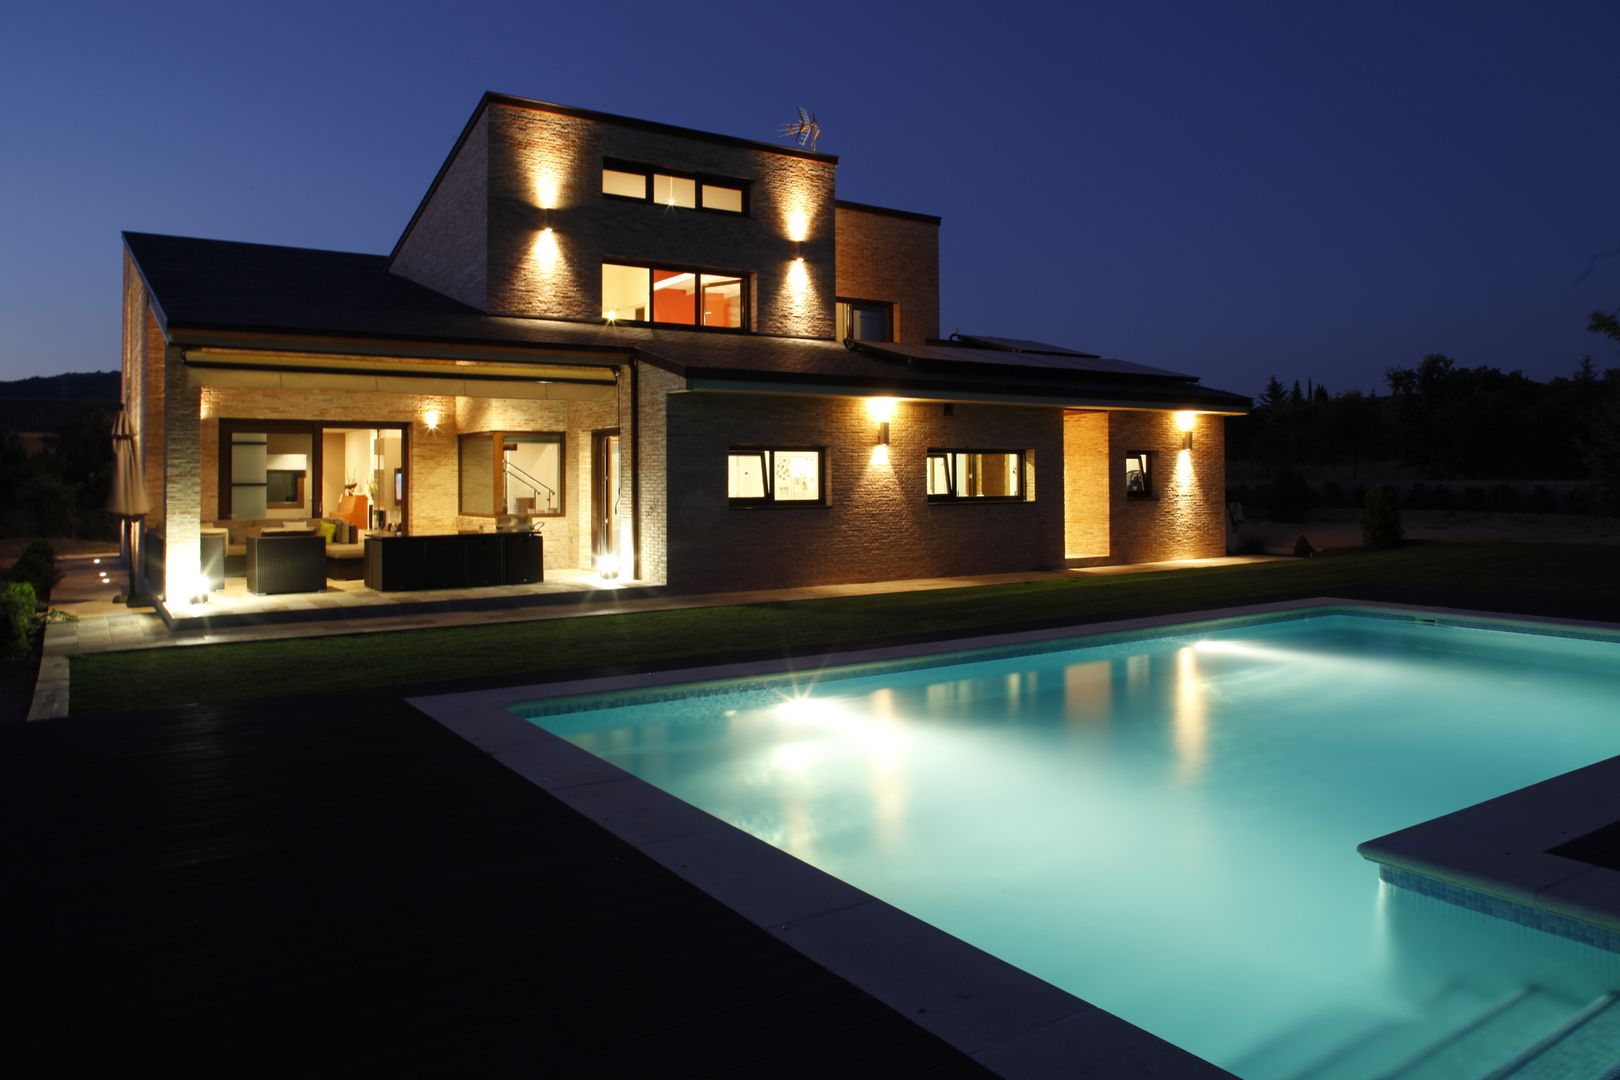 Fachada trasera con piscina Domonova Soluciones Tecnológicas Casas de estilo moderno iluminación exterior,domotica